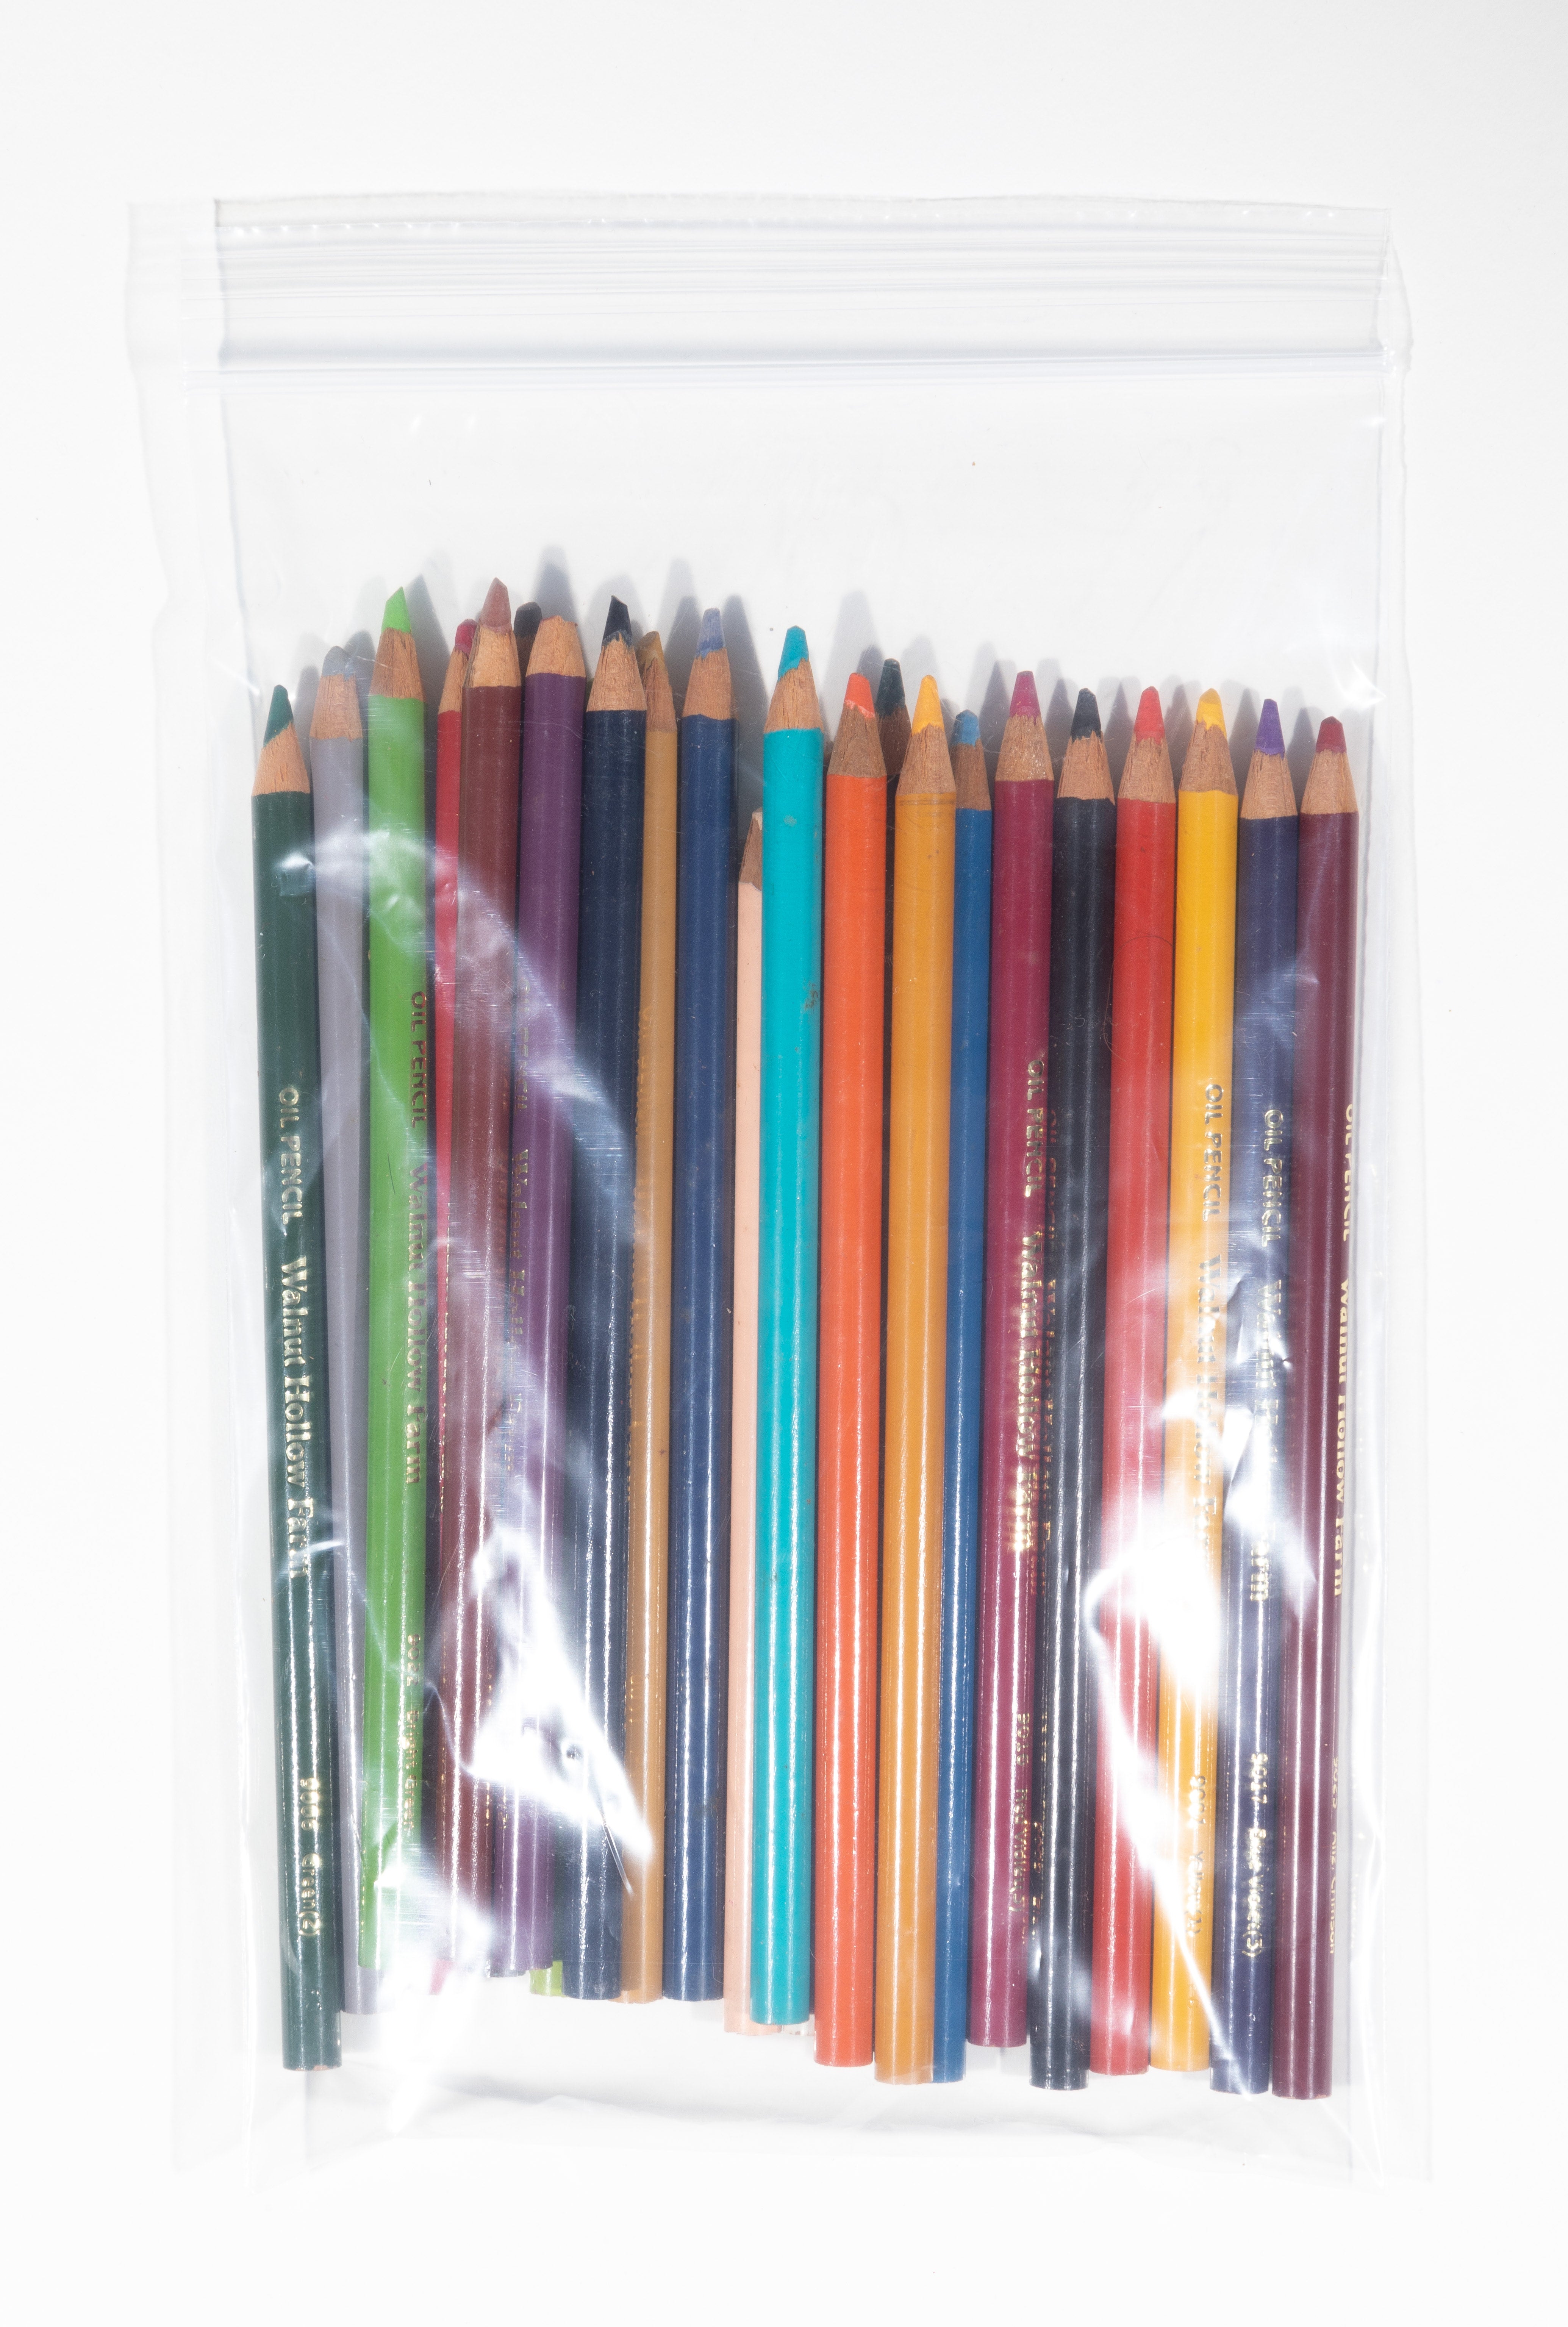 Walnut Hollow Farms Oil Color Pencils